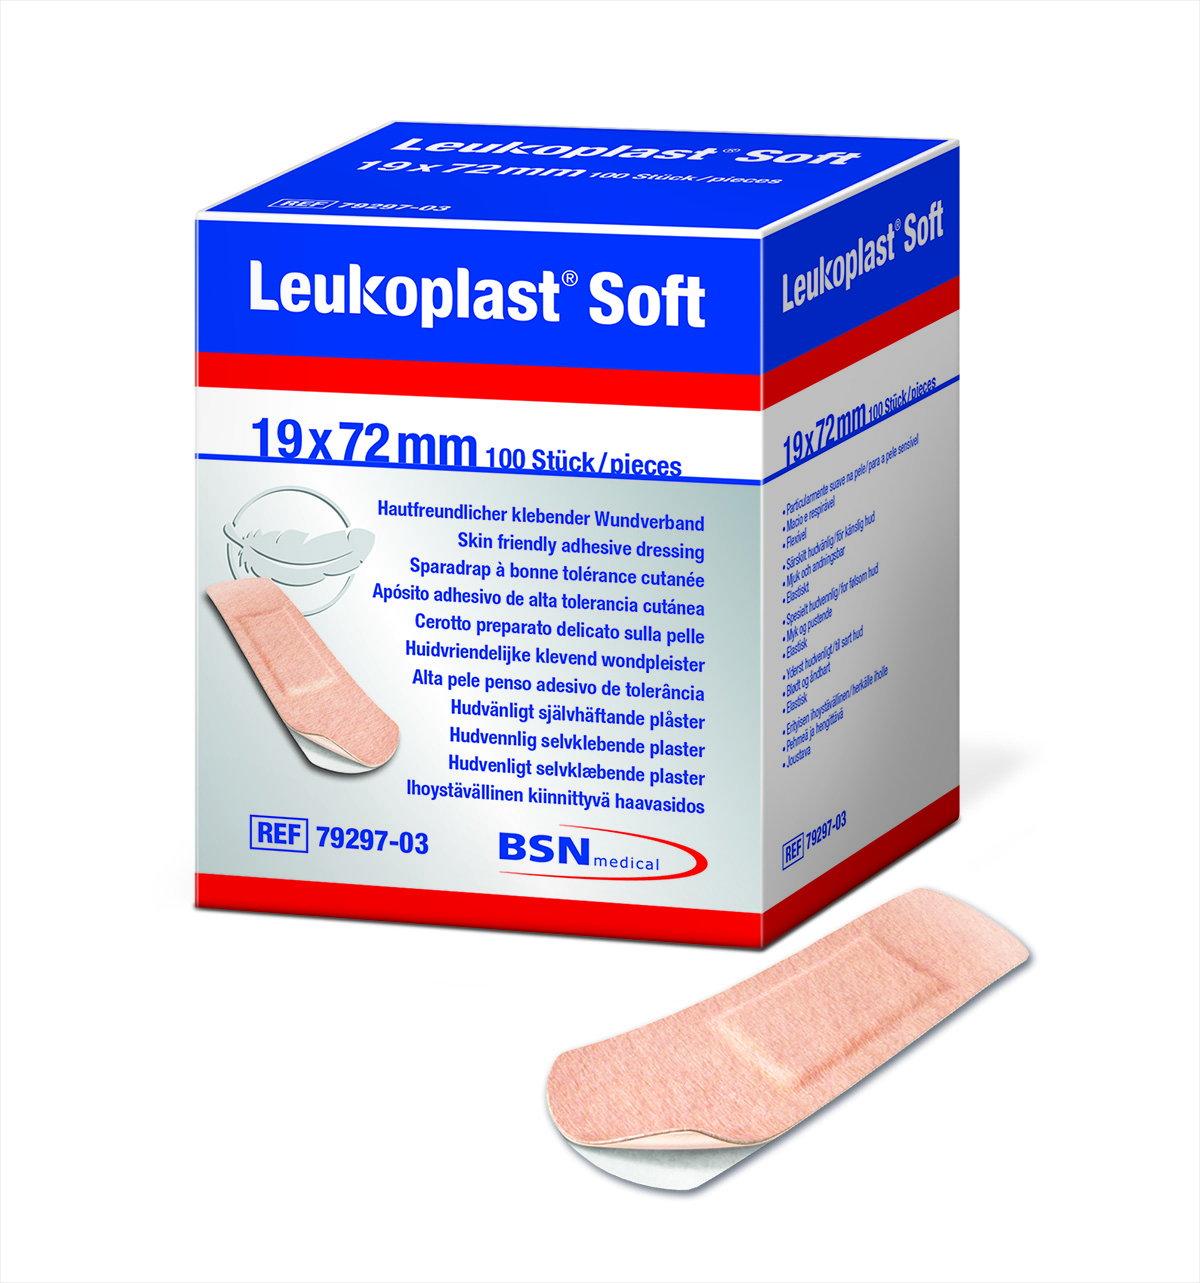 Leukoplast Soft Strips 19x72mm, steril, 100 Stck., PZN 13838420